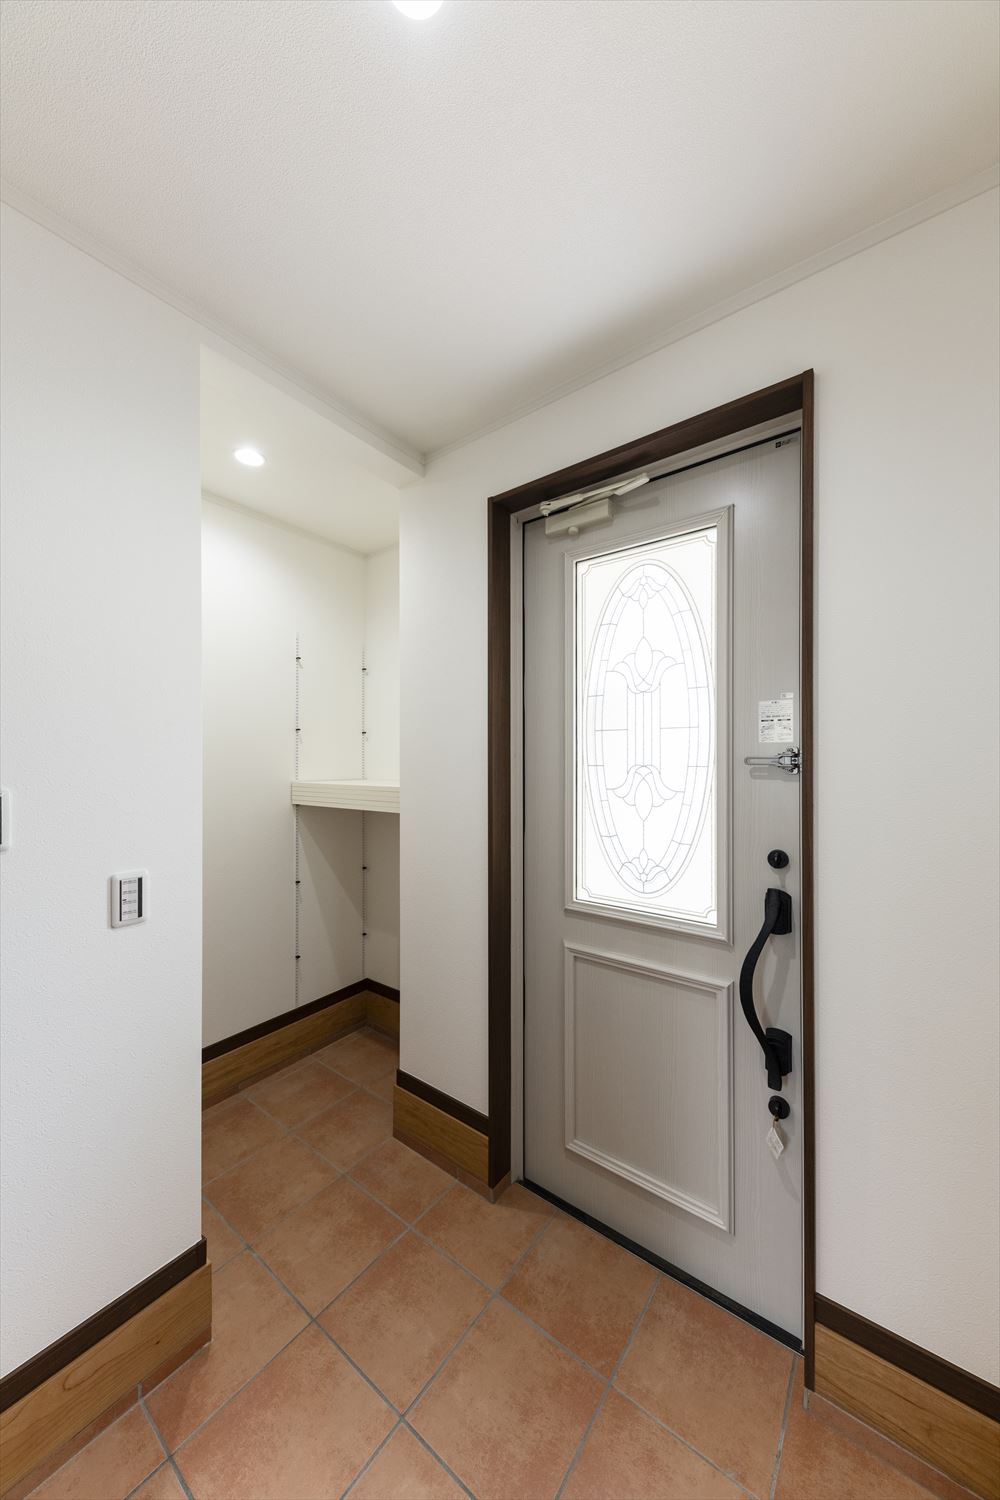 玄関ドアの大きな窓が明るく開放感のあるエントランス空間を演出。